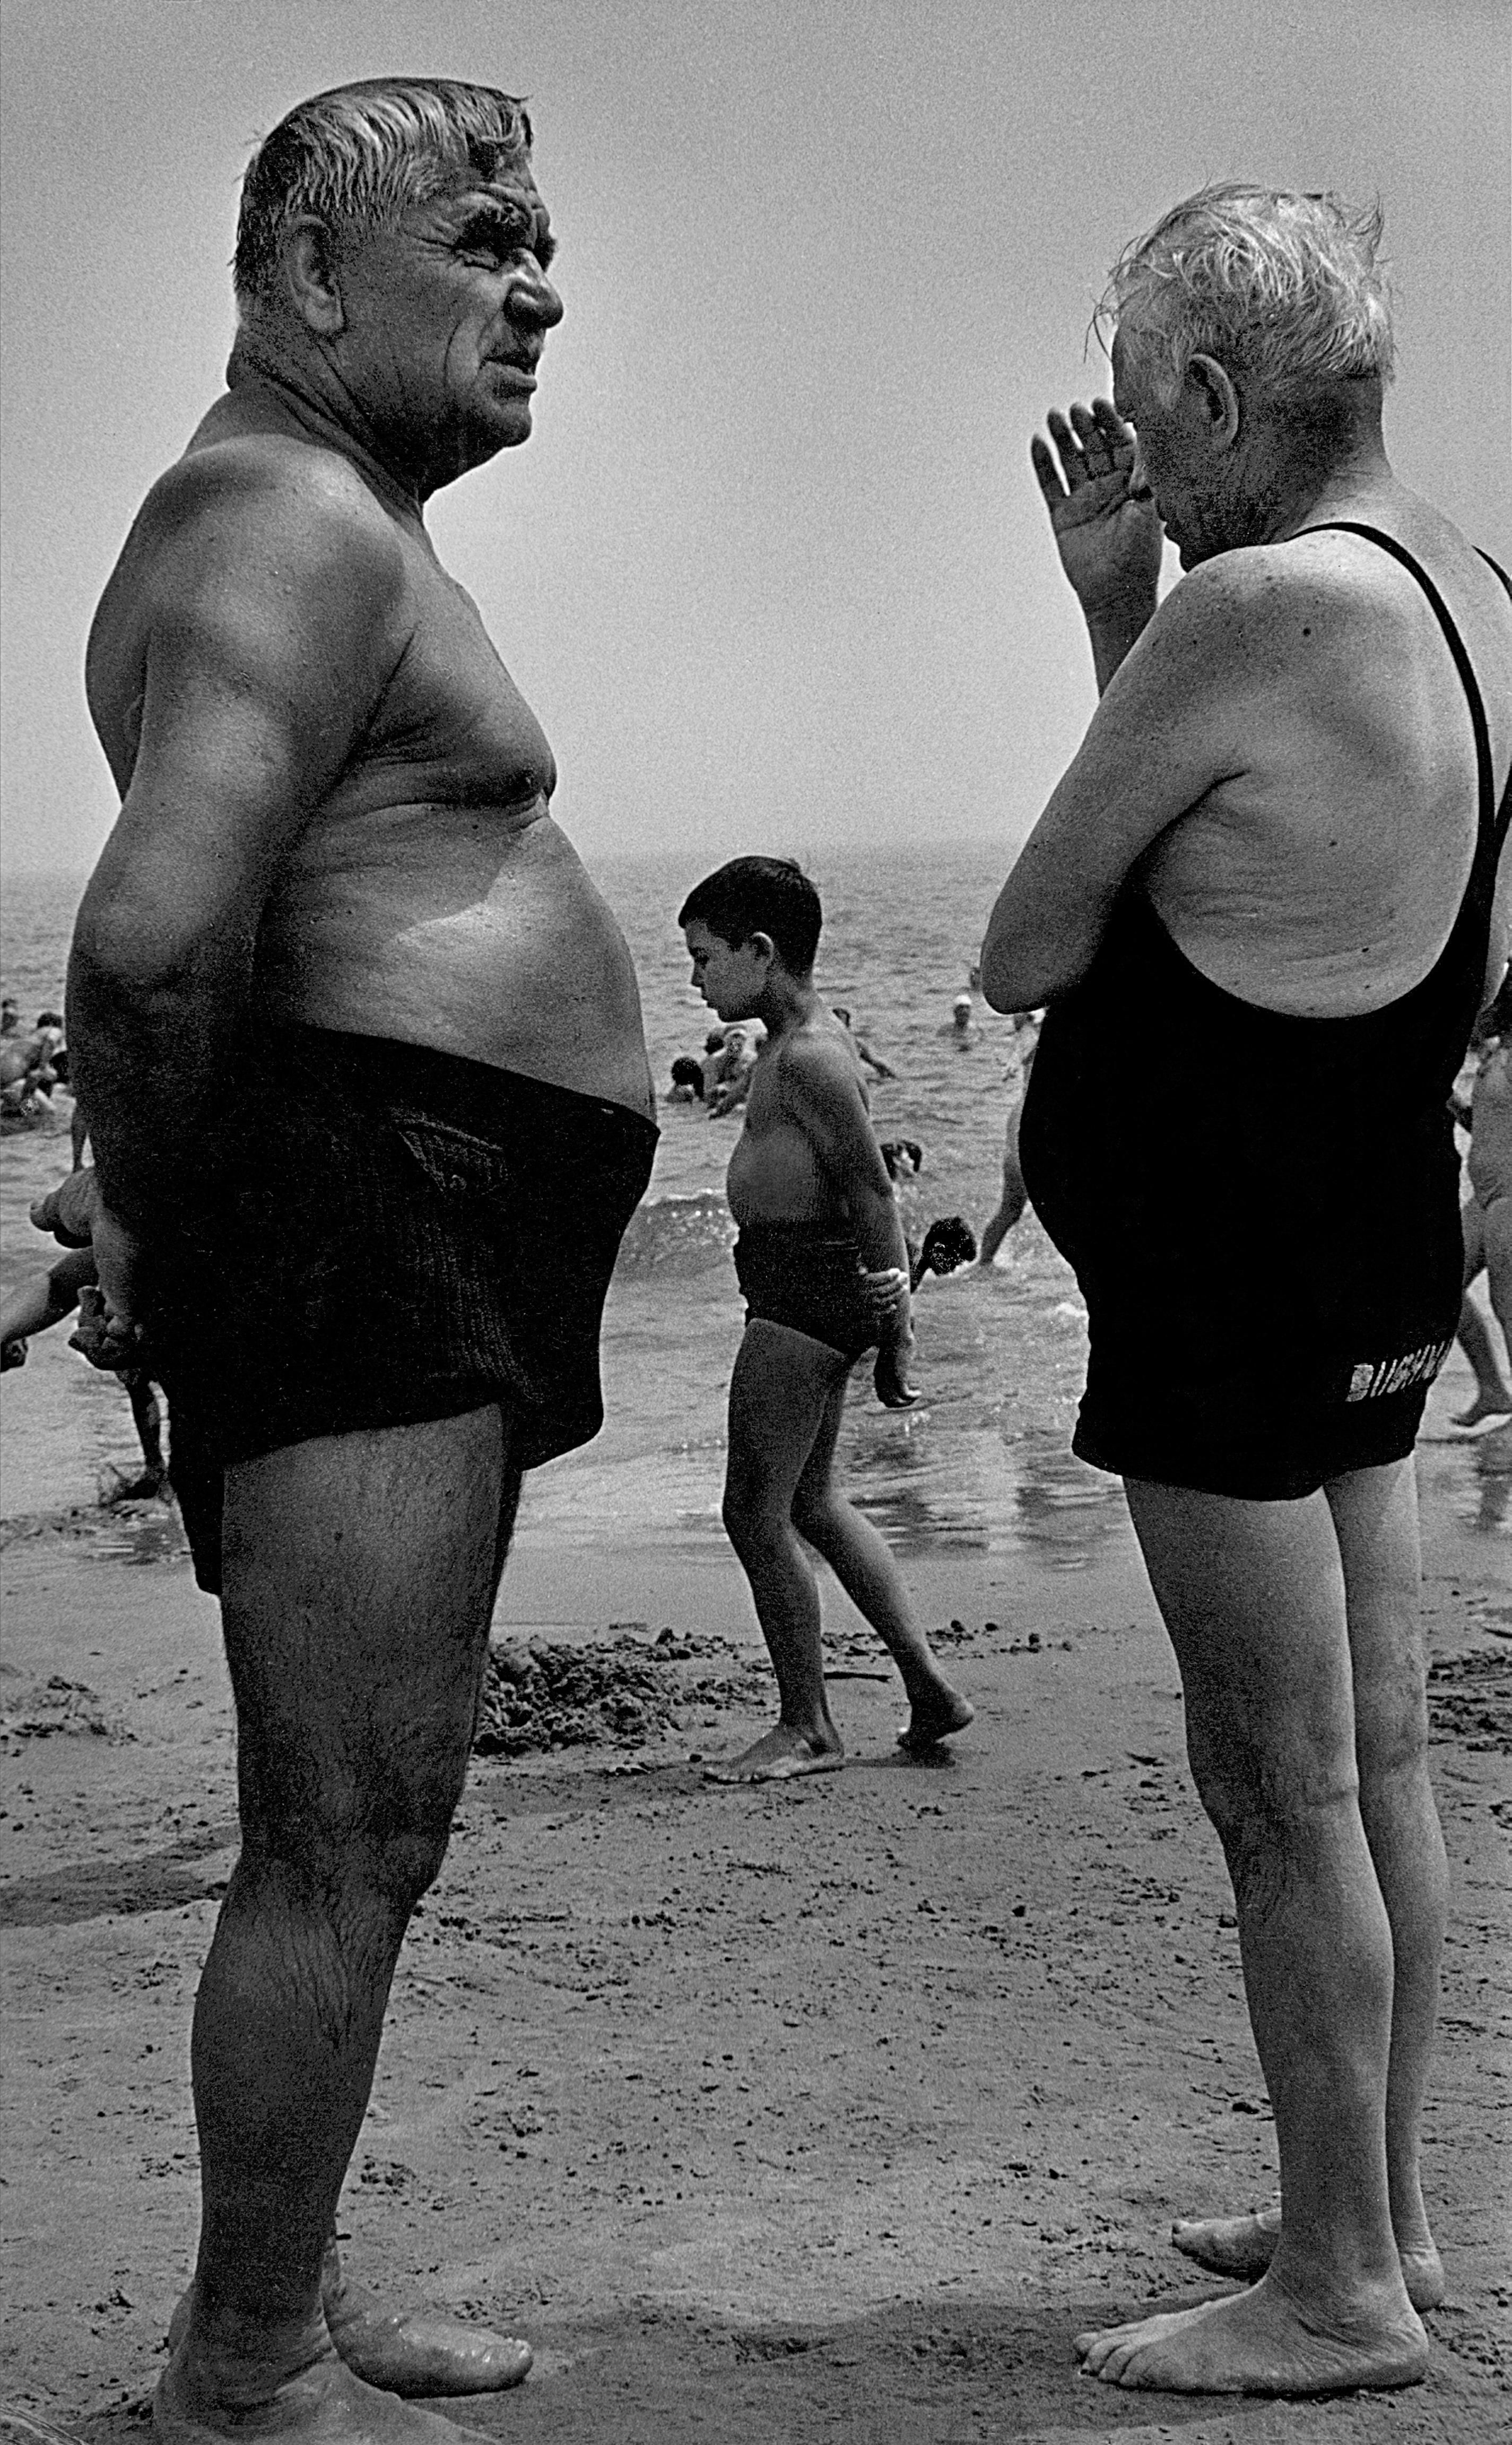 Двое мужчин и мальчик созерцают, 1950. Фотограф Гарольд Файнштейн 